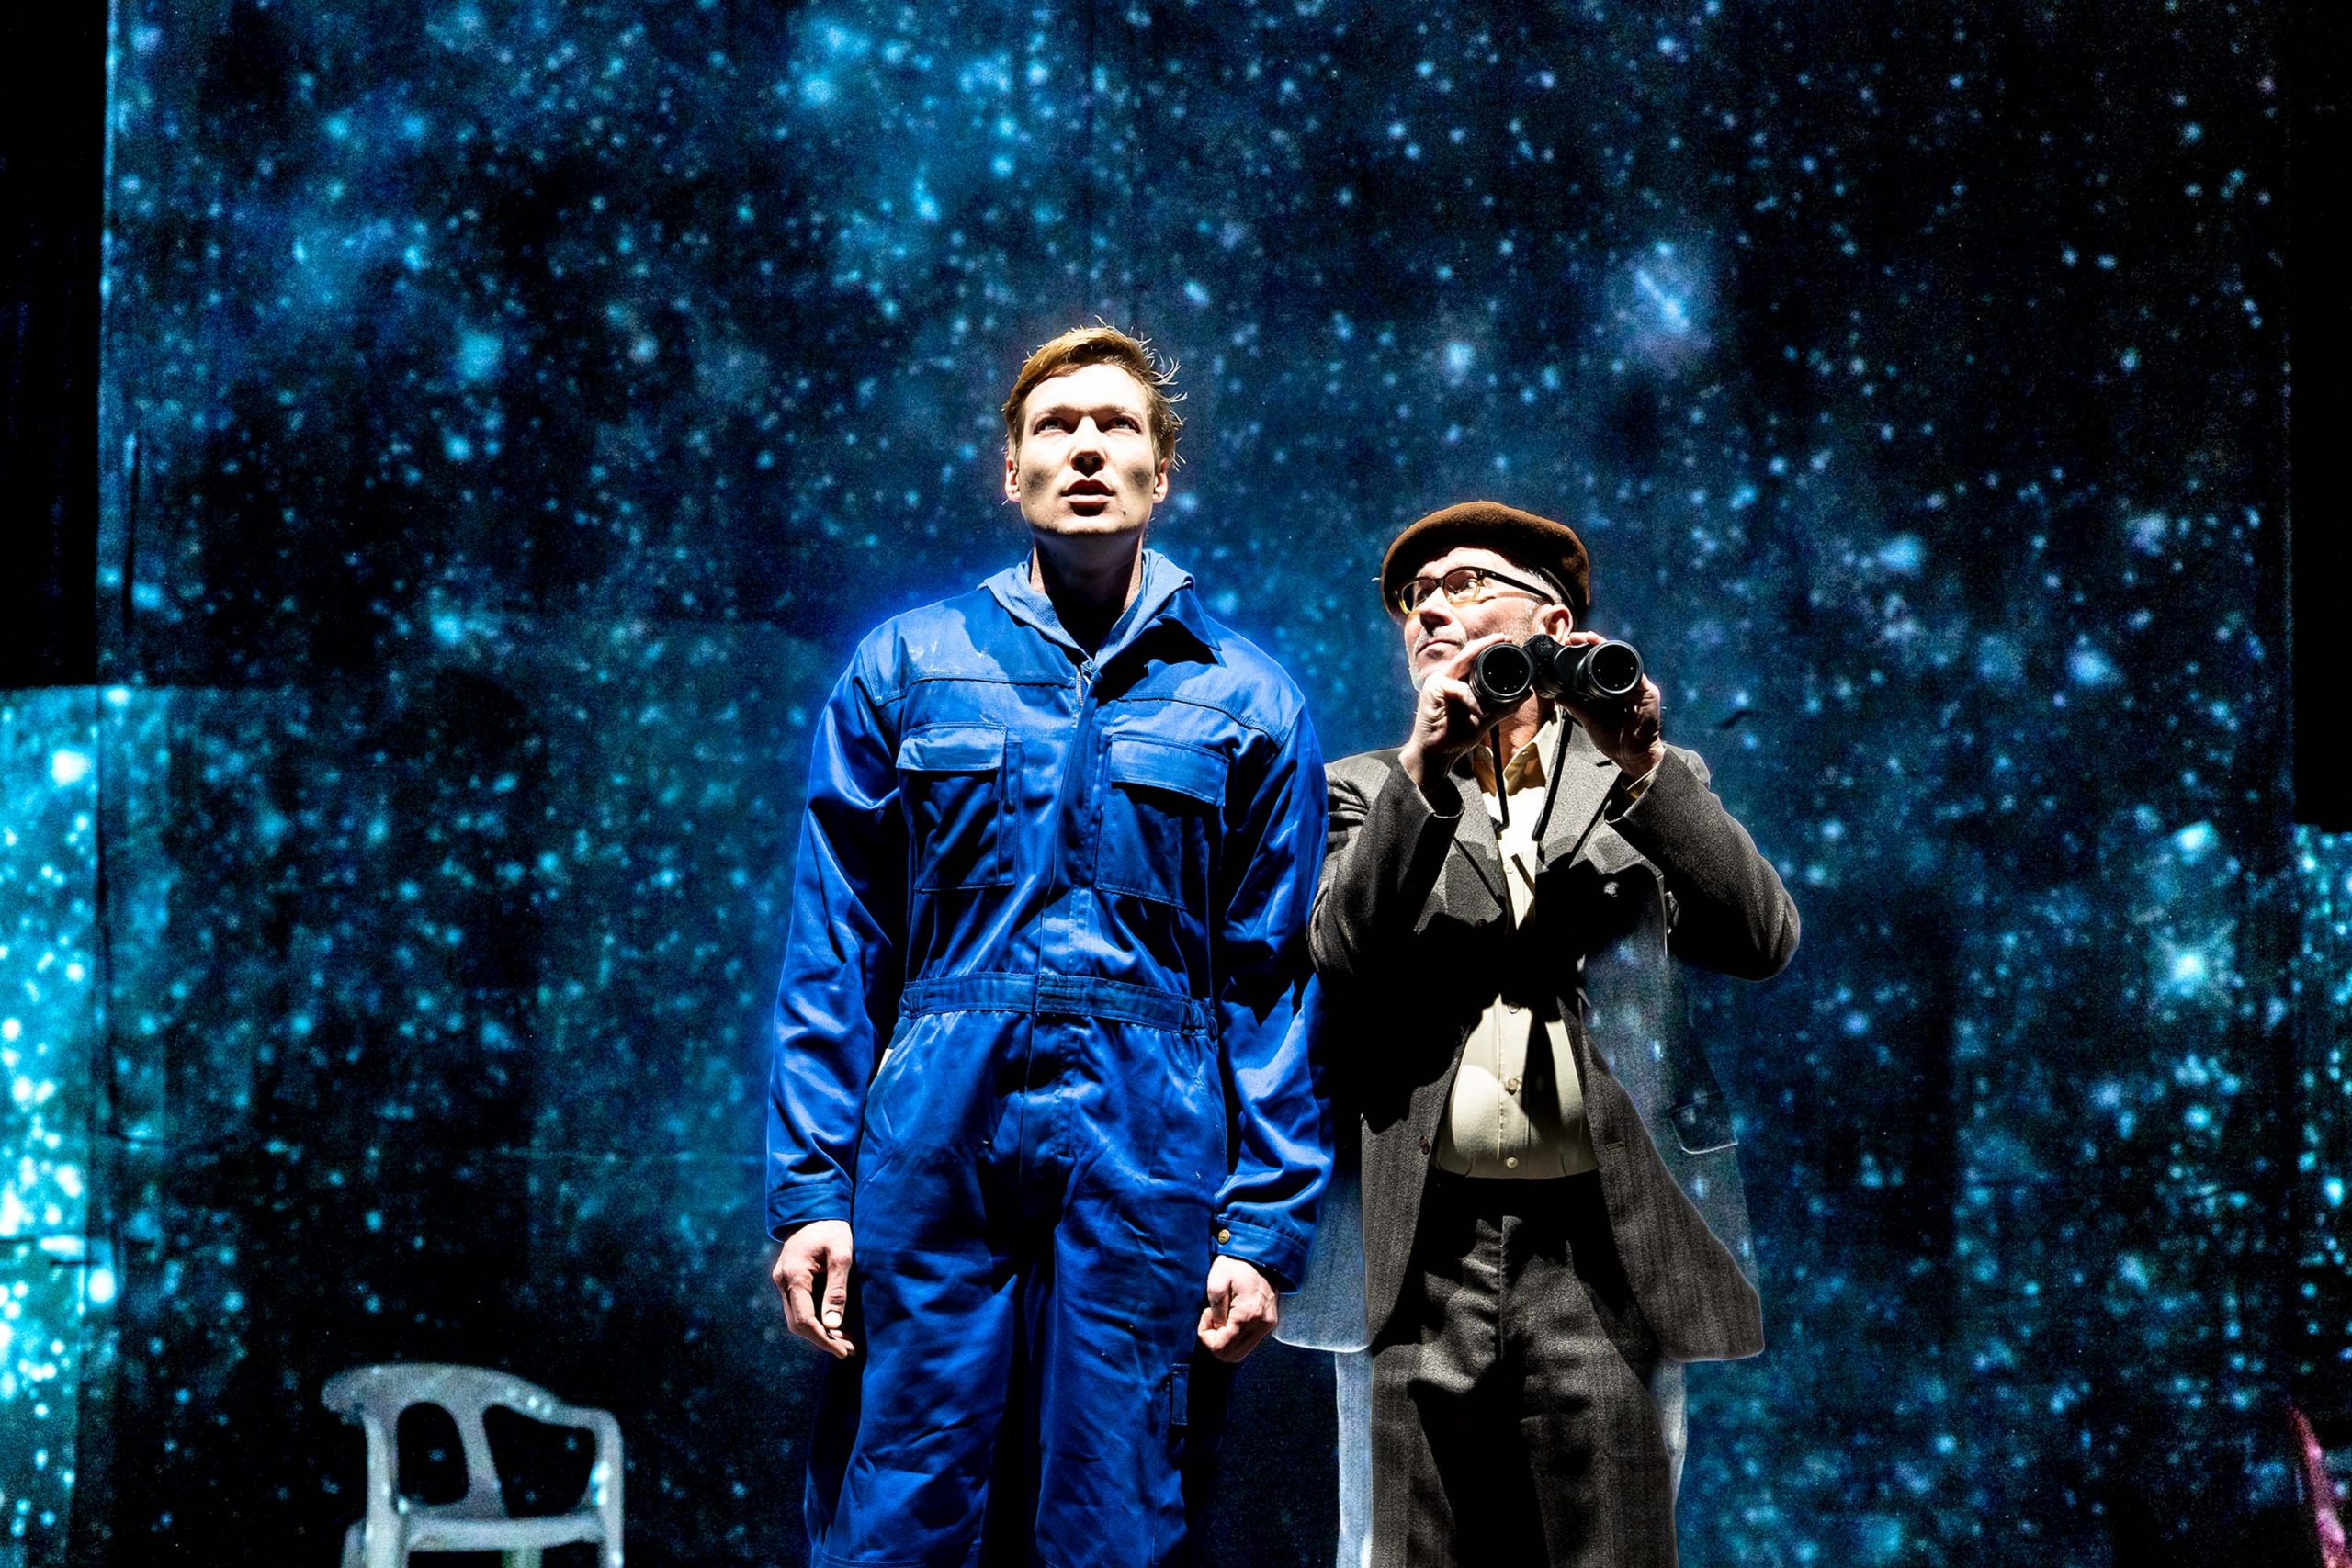 Szenenbild: Florian Herscht und Herr Köhler, der ein Fernglas in der Hand hält, betrachten die Sterne.